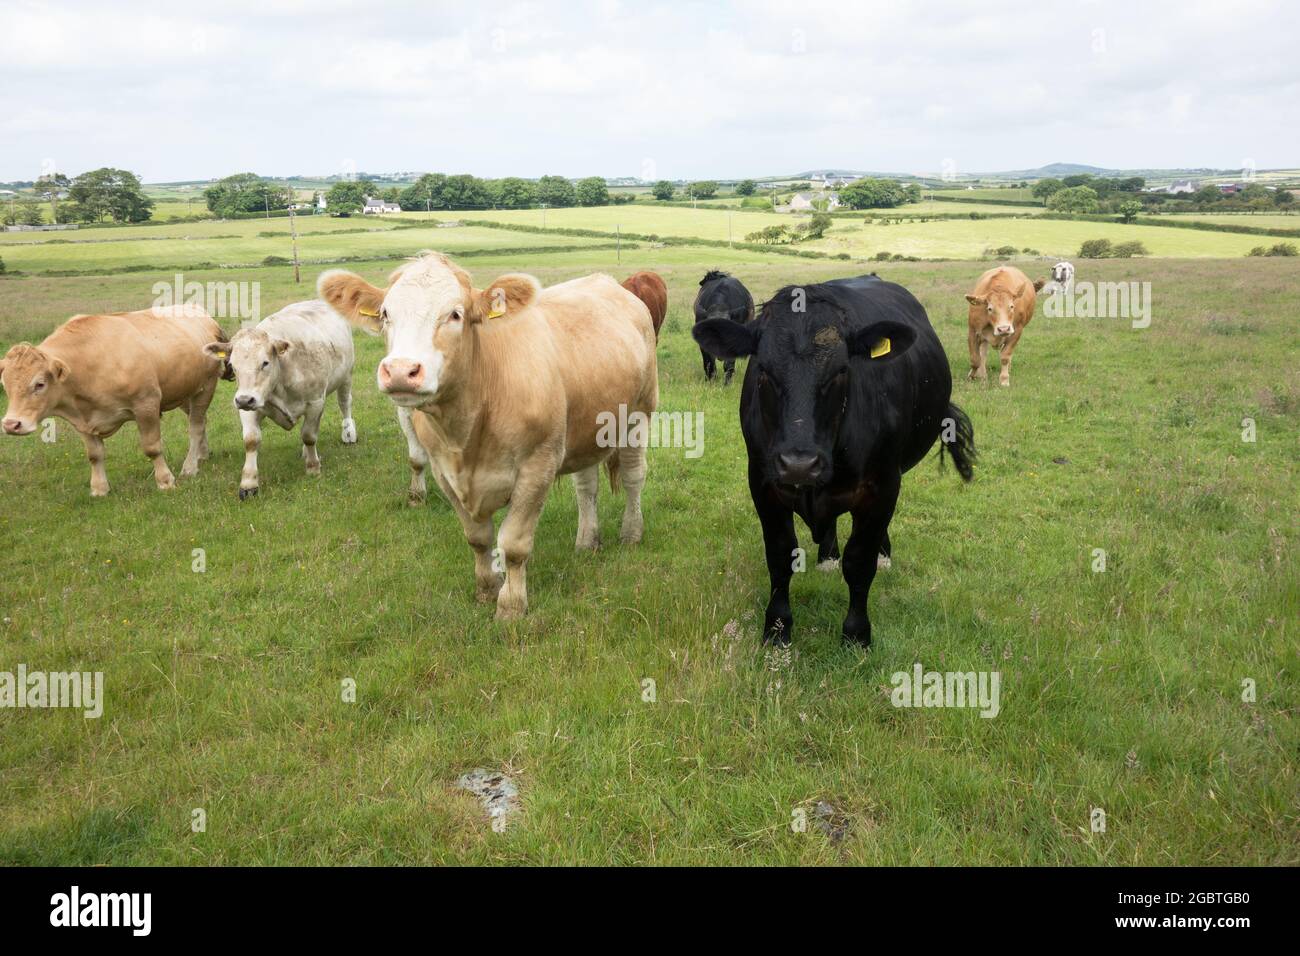 Curieux, mais timide, le bétail gallois / vaches / bétail dans un champ Royaume-Uni Banque D'Images